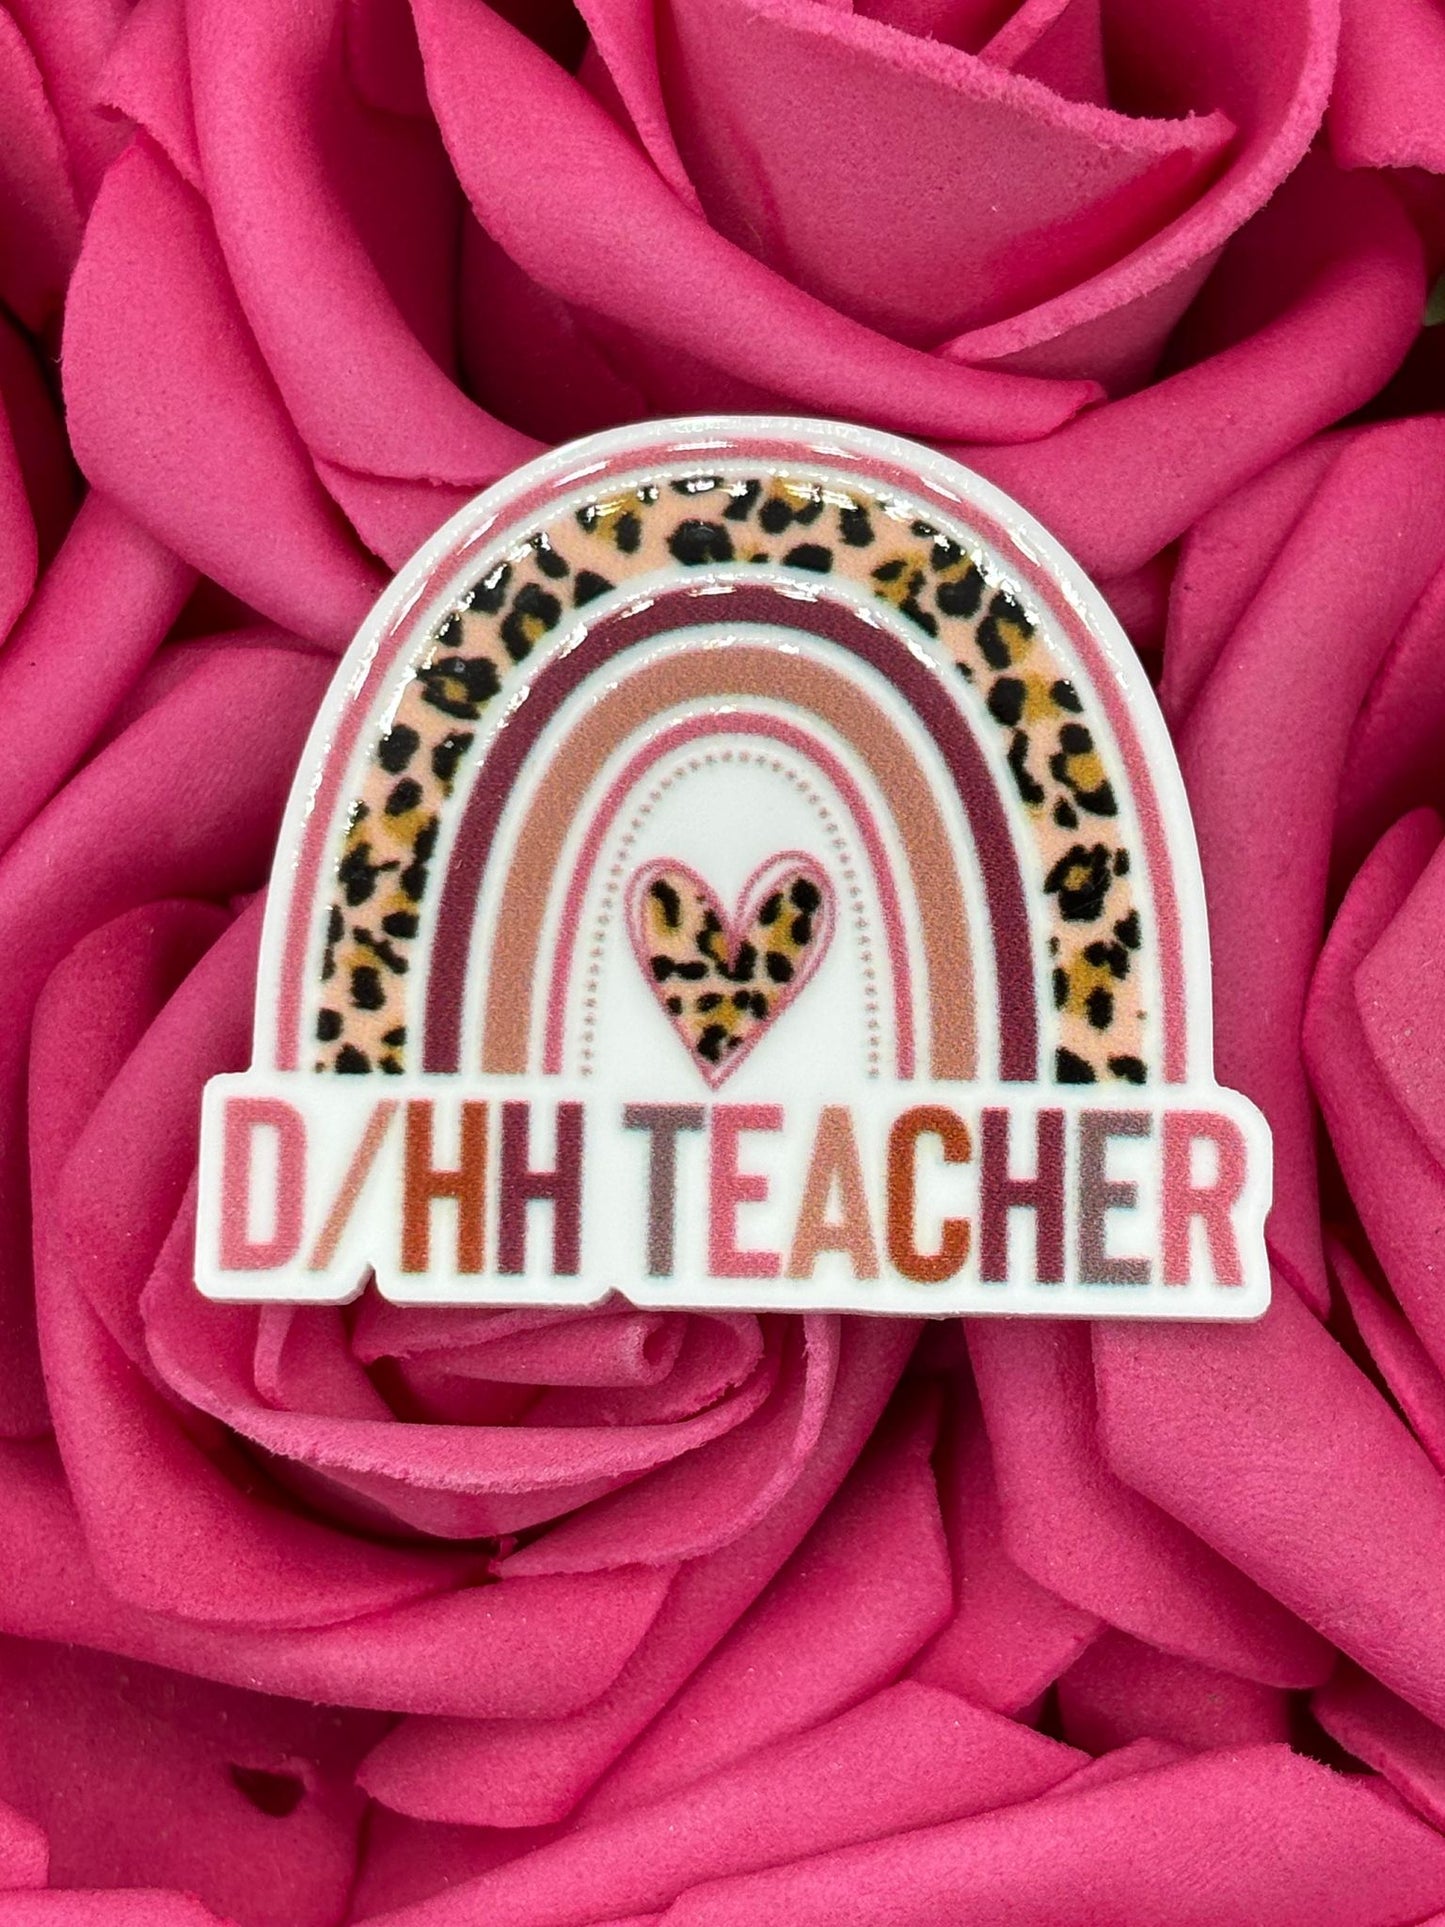 #2384 D/HH Teacher